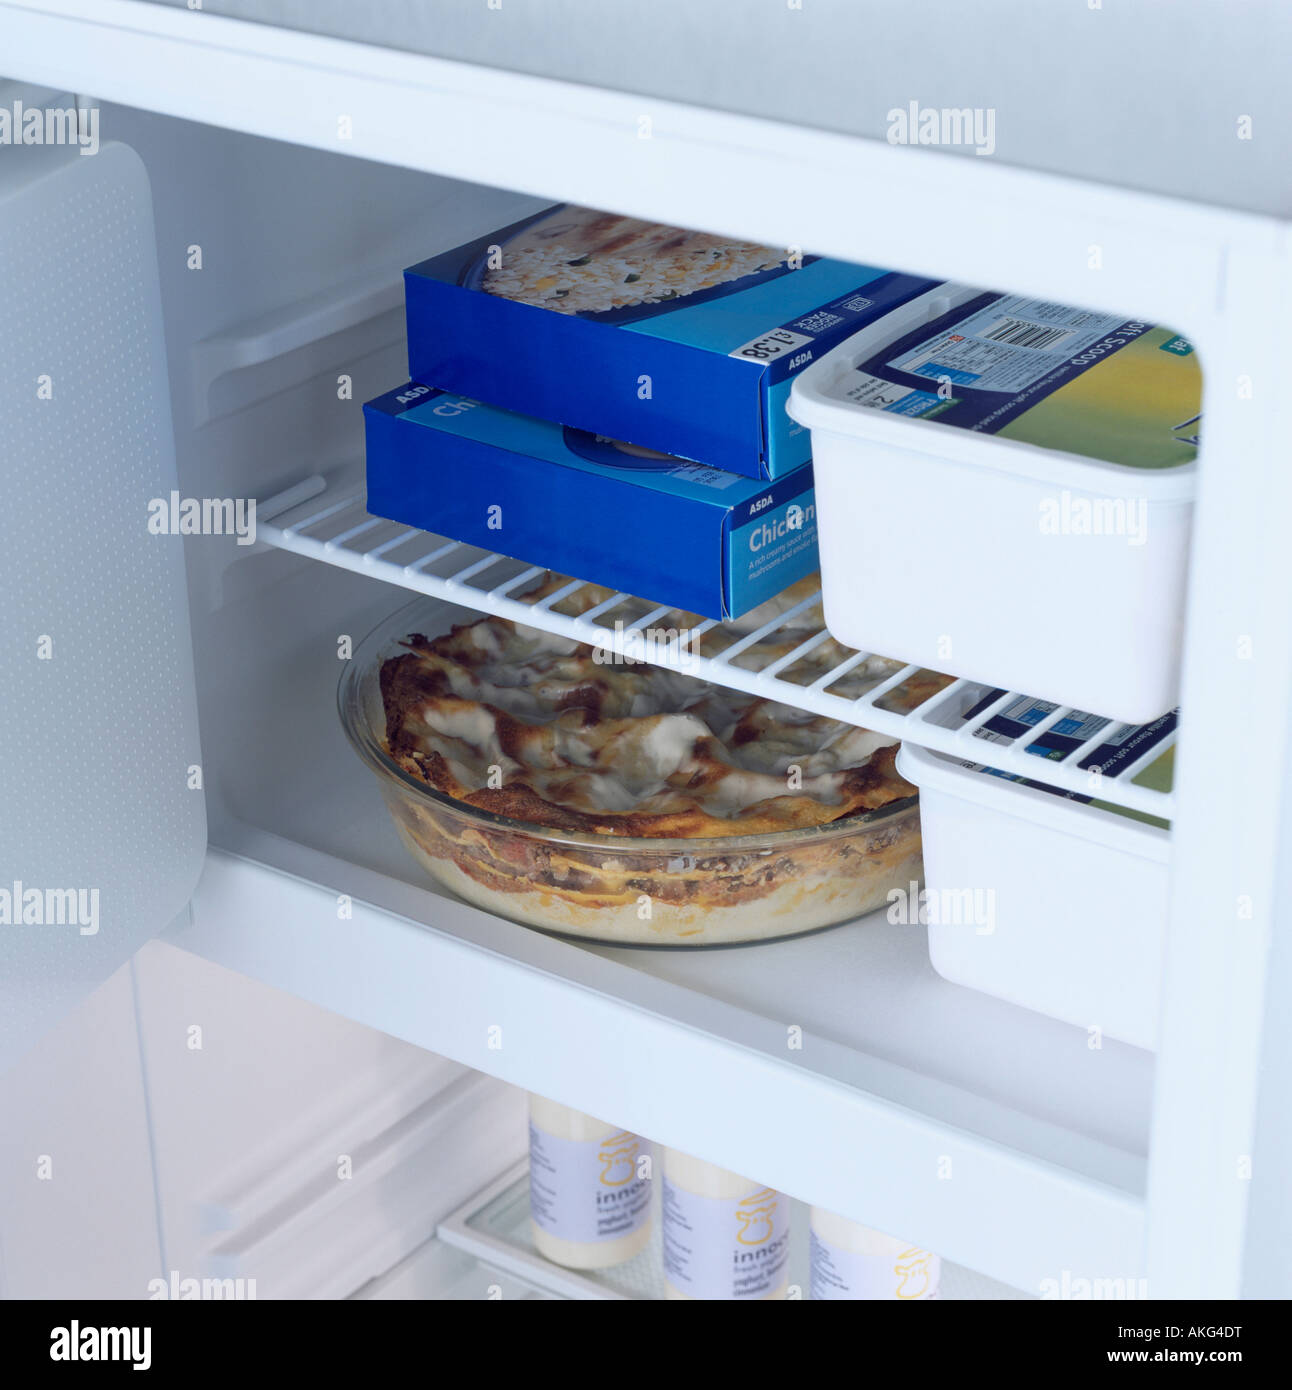 Chiusura del frigorifero con la porta aperta e il cibo in contenitori sugli scaffali Foto Stock